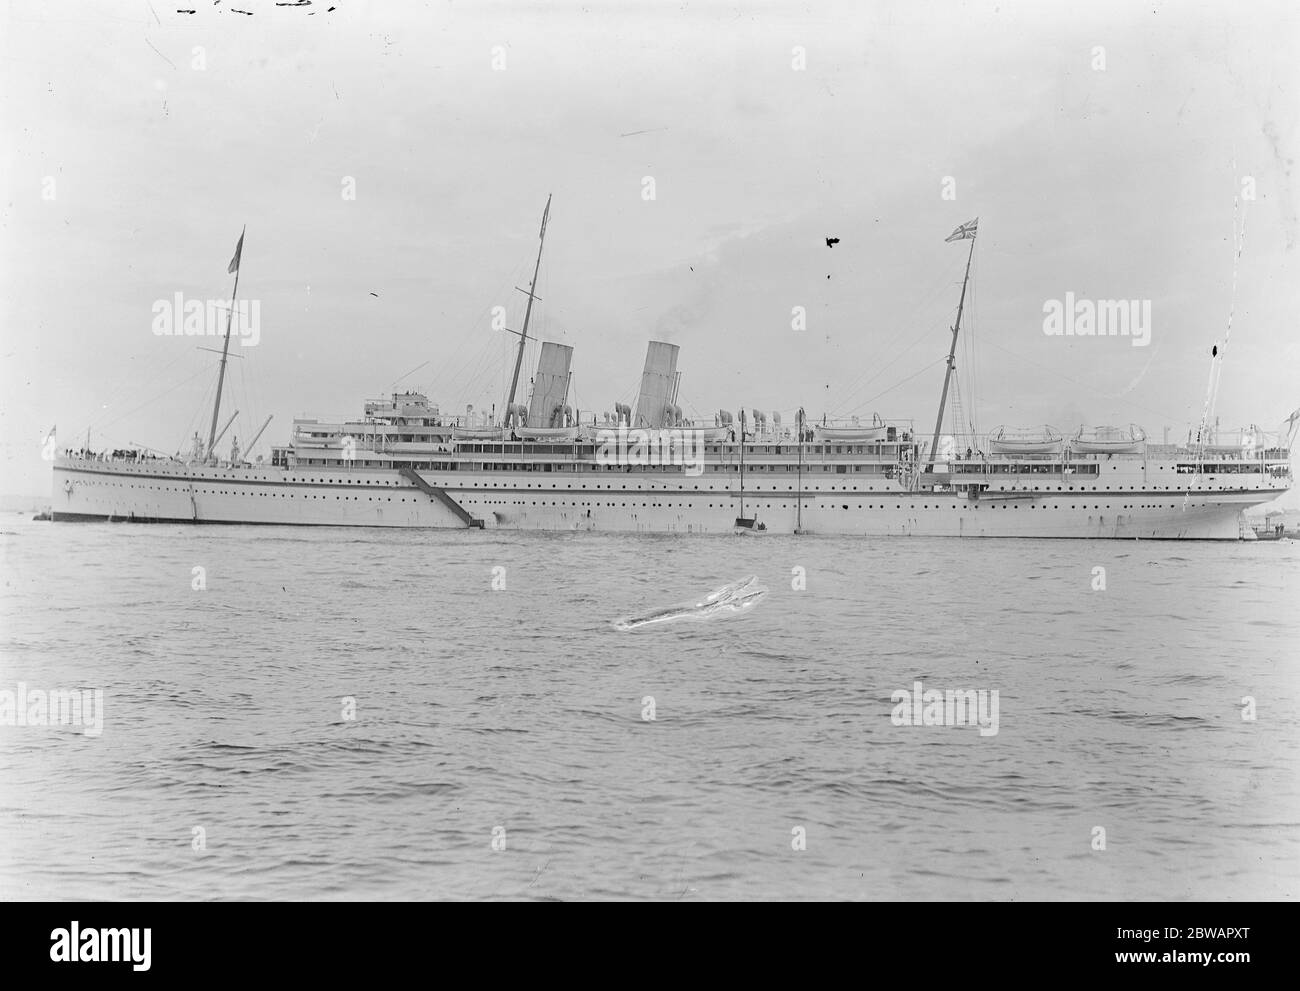 RMS Medina war ein Schiff, das 1911 von Caird and Company, Greenock, Schottland, für die Peninsular and Oriental Steam Navigation Company gebaut wurde. Sie war ein Royal Mail Ship, das für den Einsatz auf der Strecke London nach Australien bestimmt war und das letzte der zehn Schiffe in der M-Klasse von P&O war Stockfoto